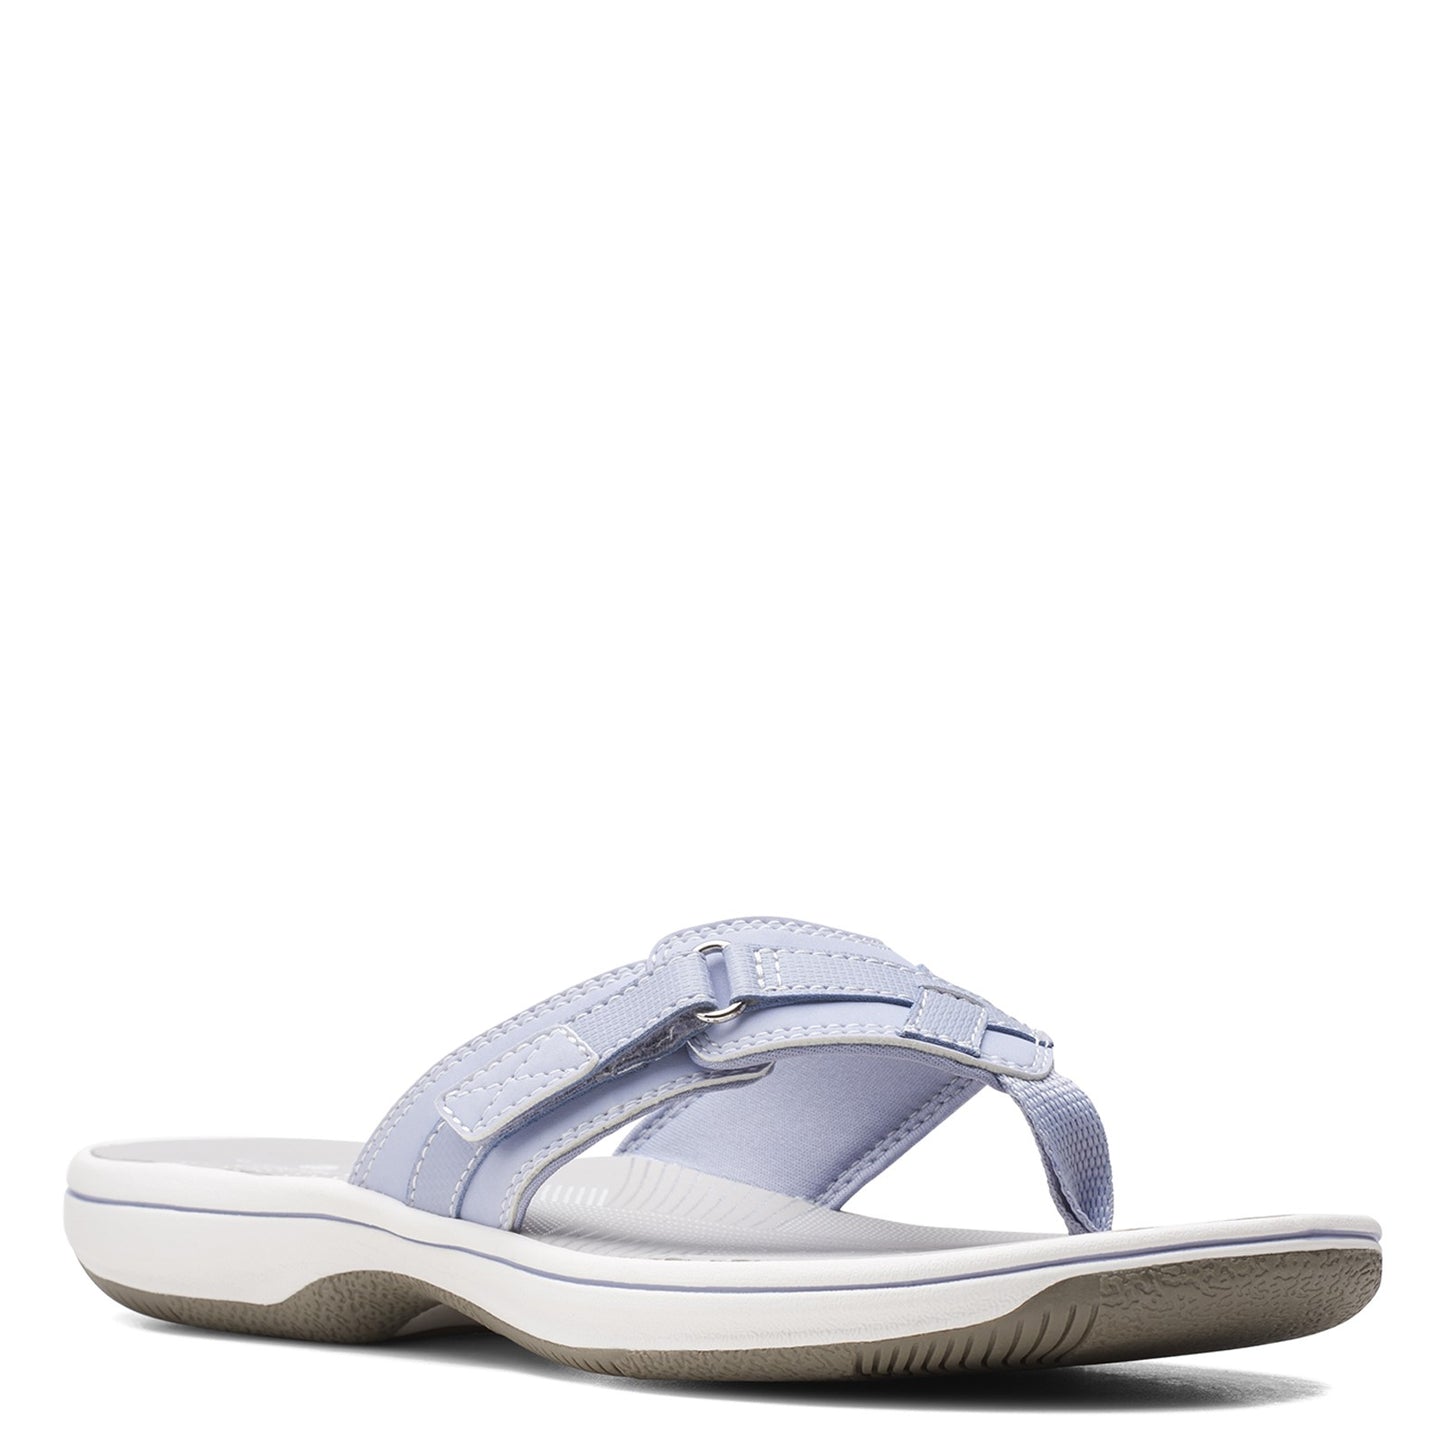 Peltz Shoes  Women's Clarks Breeze Sea Sandal LAVENDER 26158712